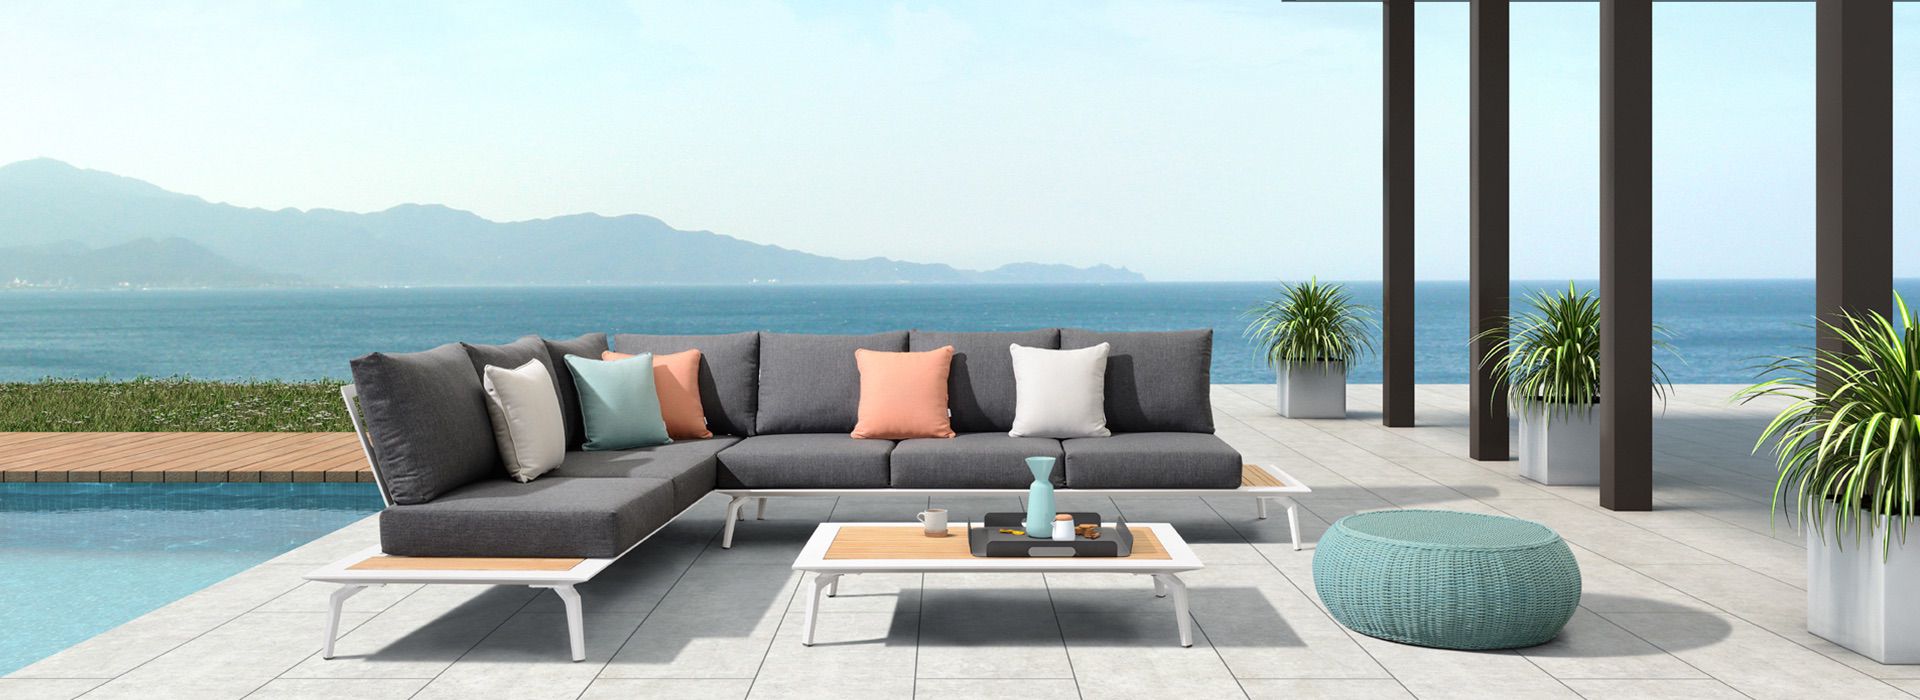 garden furniture sofa set